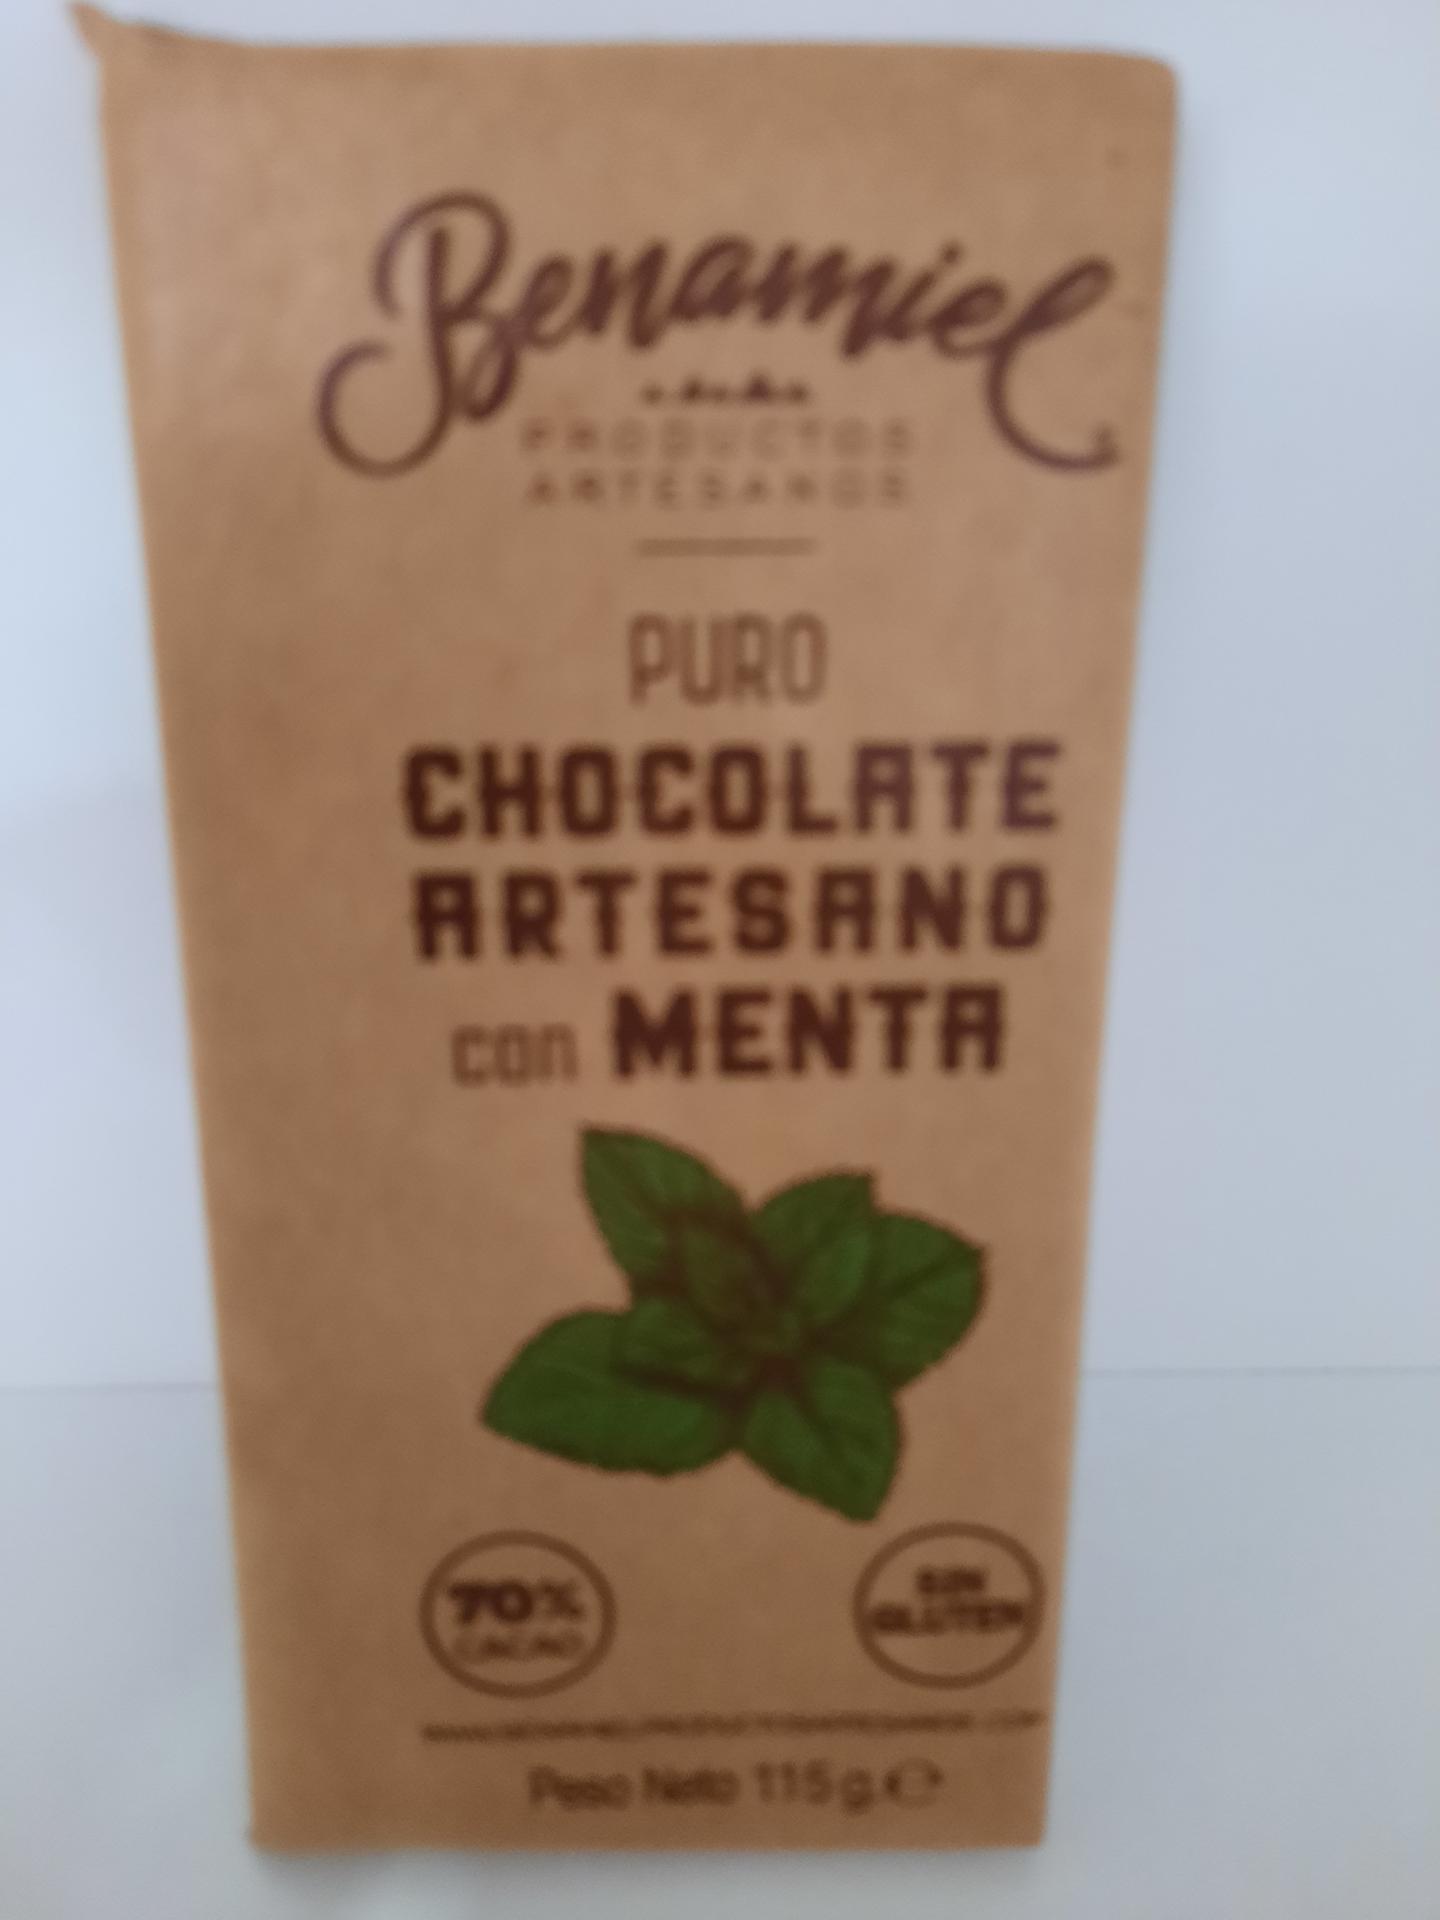 Tableta de chocolate puro con MENTA (sin gluten ) 115 gr.